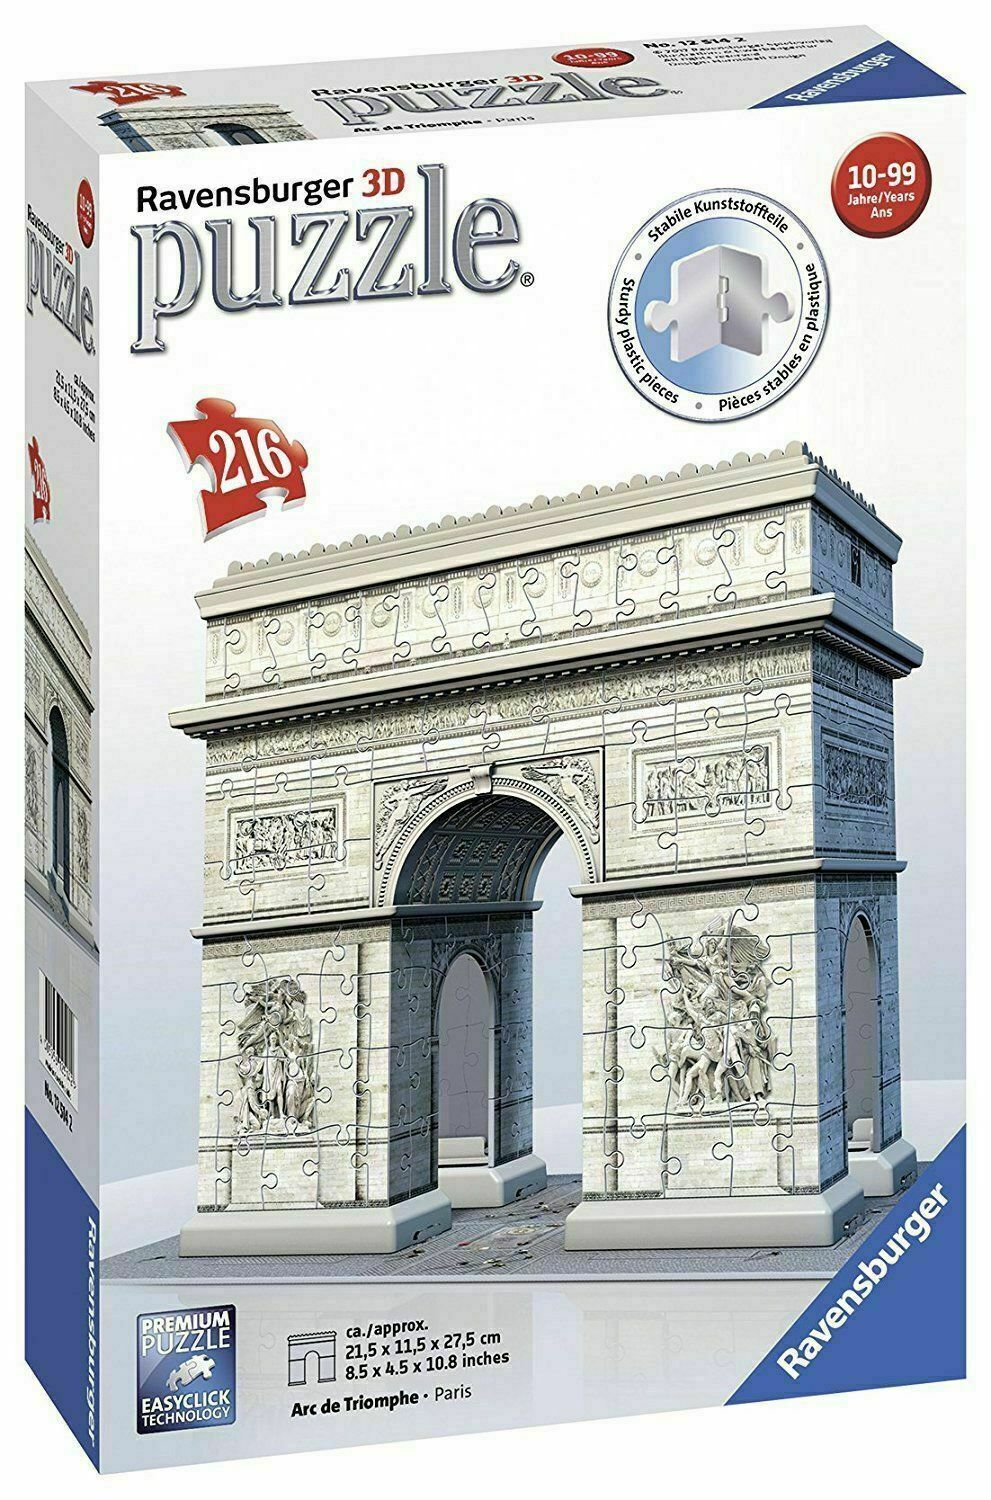 RAVENSBURGER PUZZLE 3D ARCO DI TRIONFO 216pz 12514